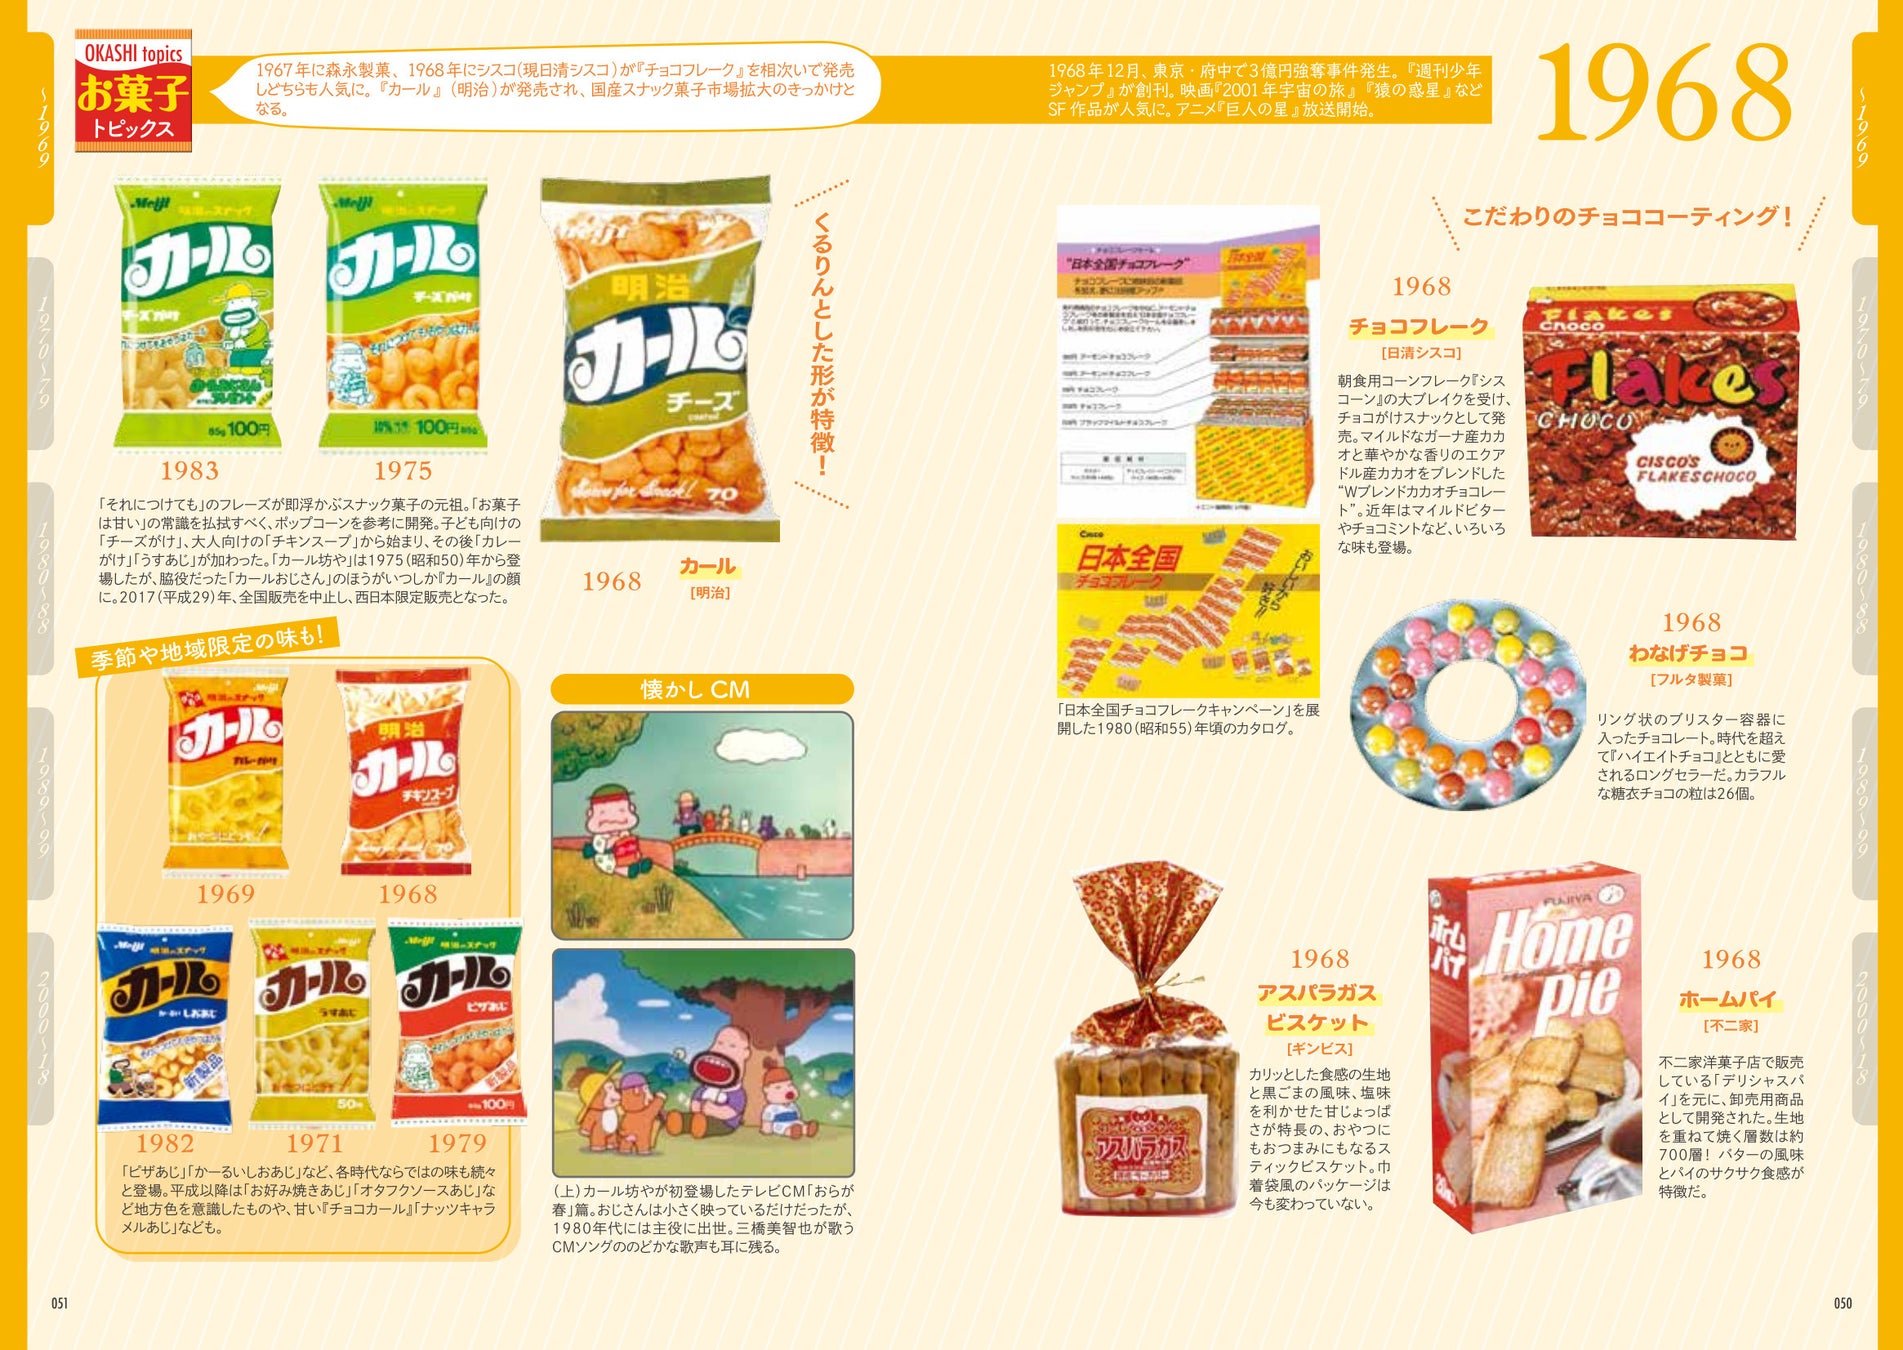 昭和〜平成のおやつタイムを彩ってきた、日本のお菓子の驚くべき多様性がこの一冊に！ 書籍『日本お菓子クロニクル』が辰巳出版より9月11日発売